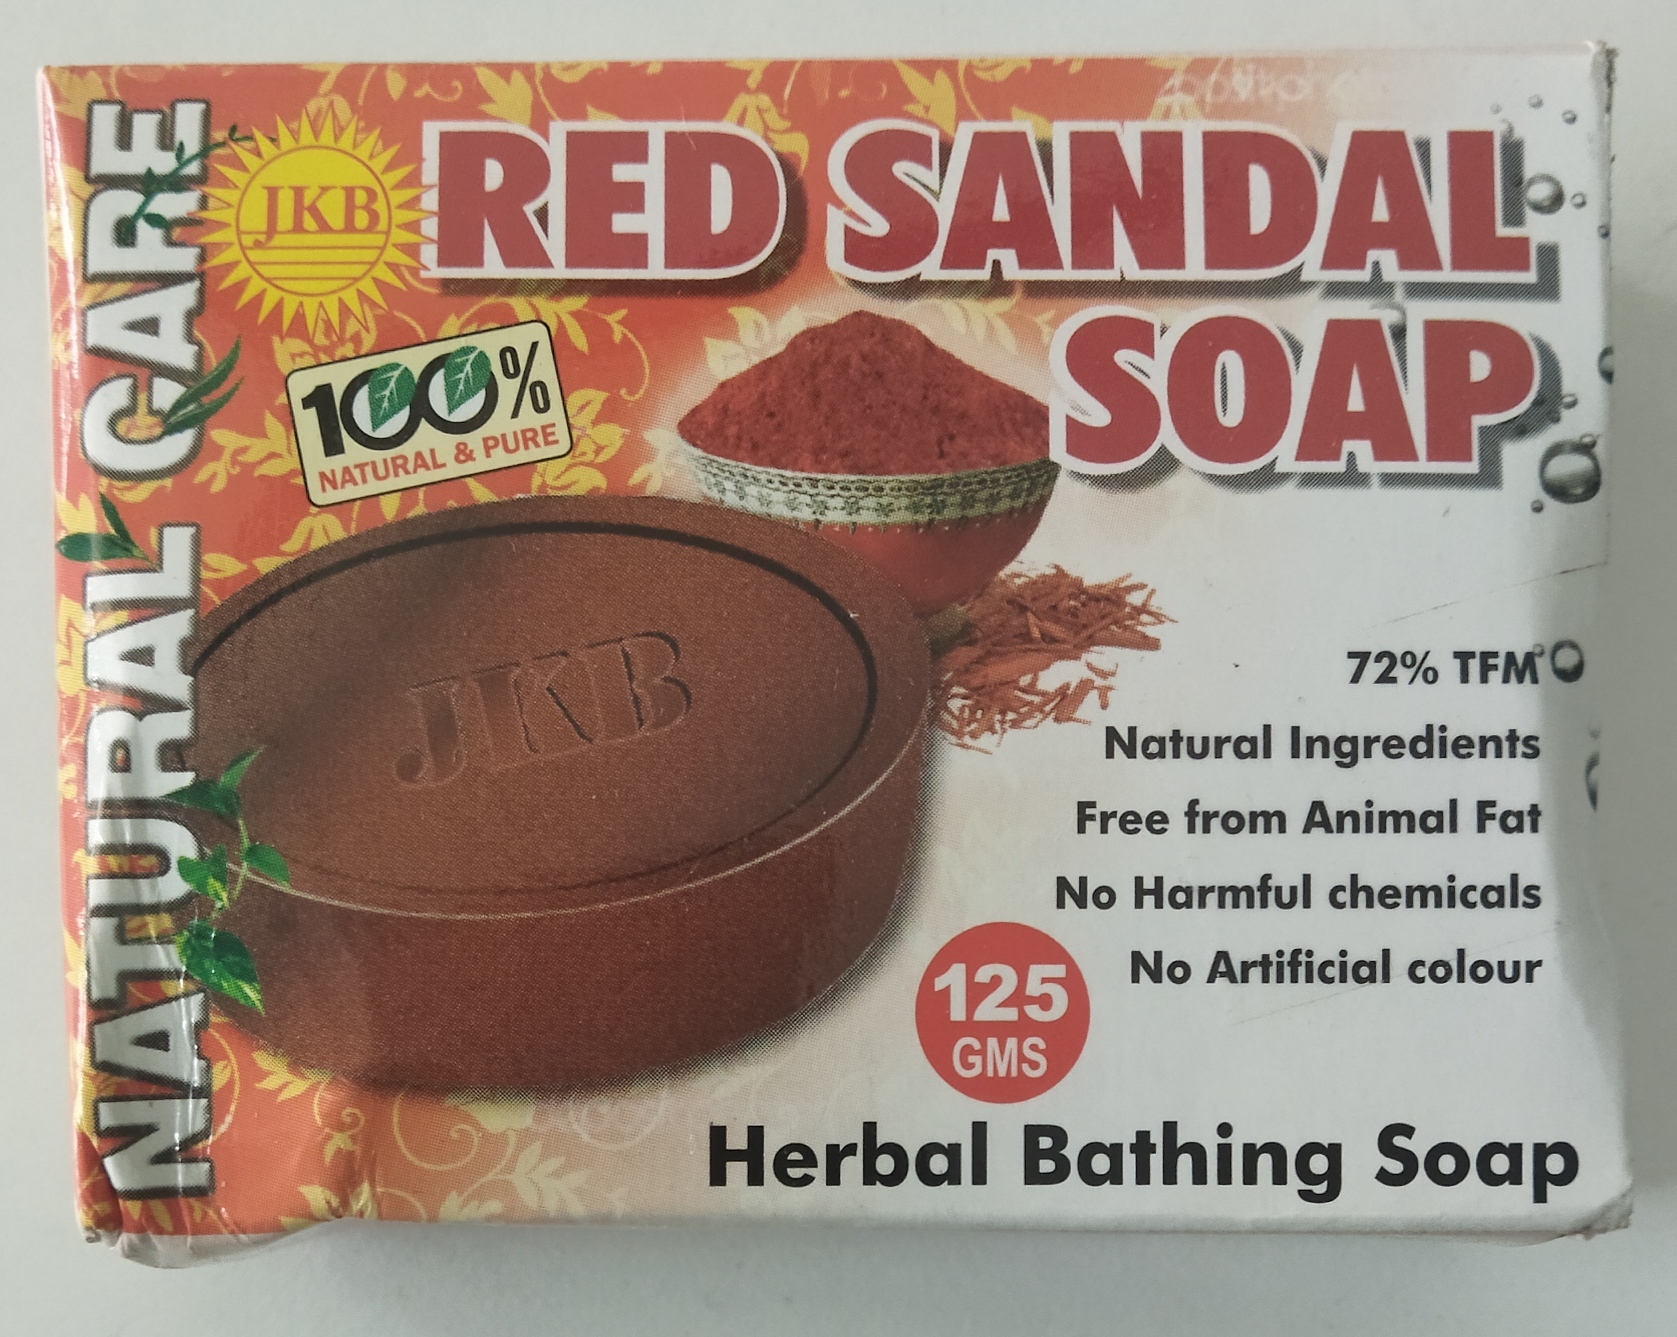 JKB Red sandal soap